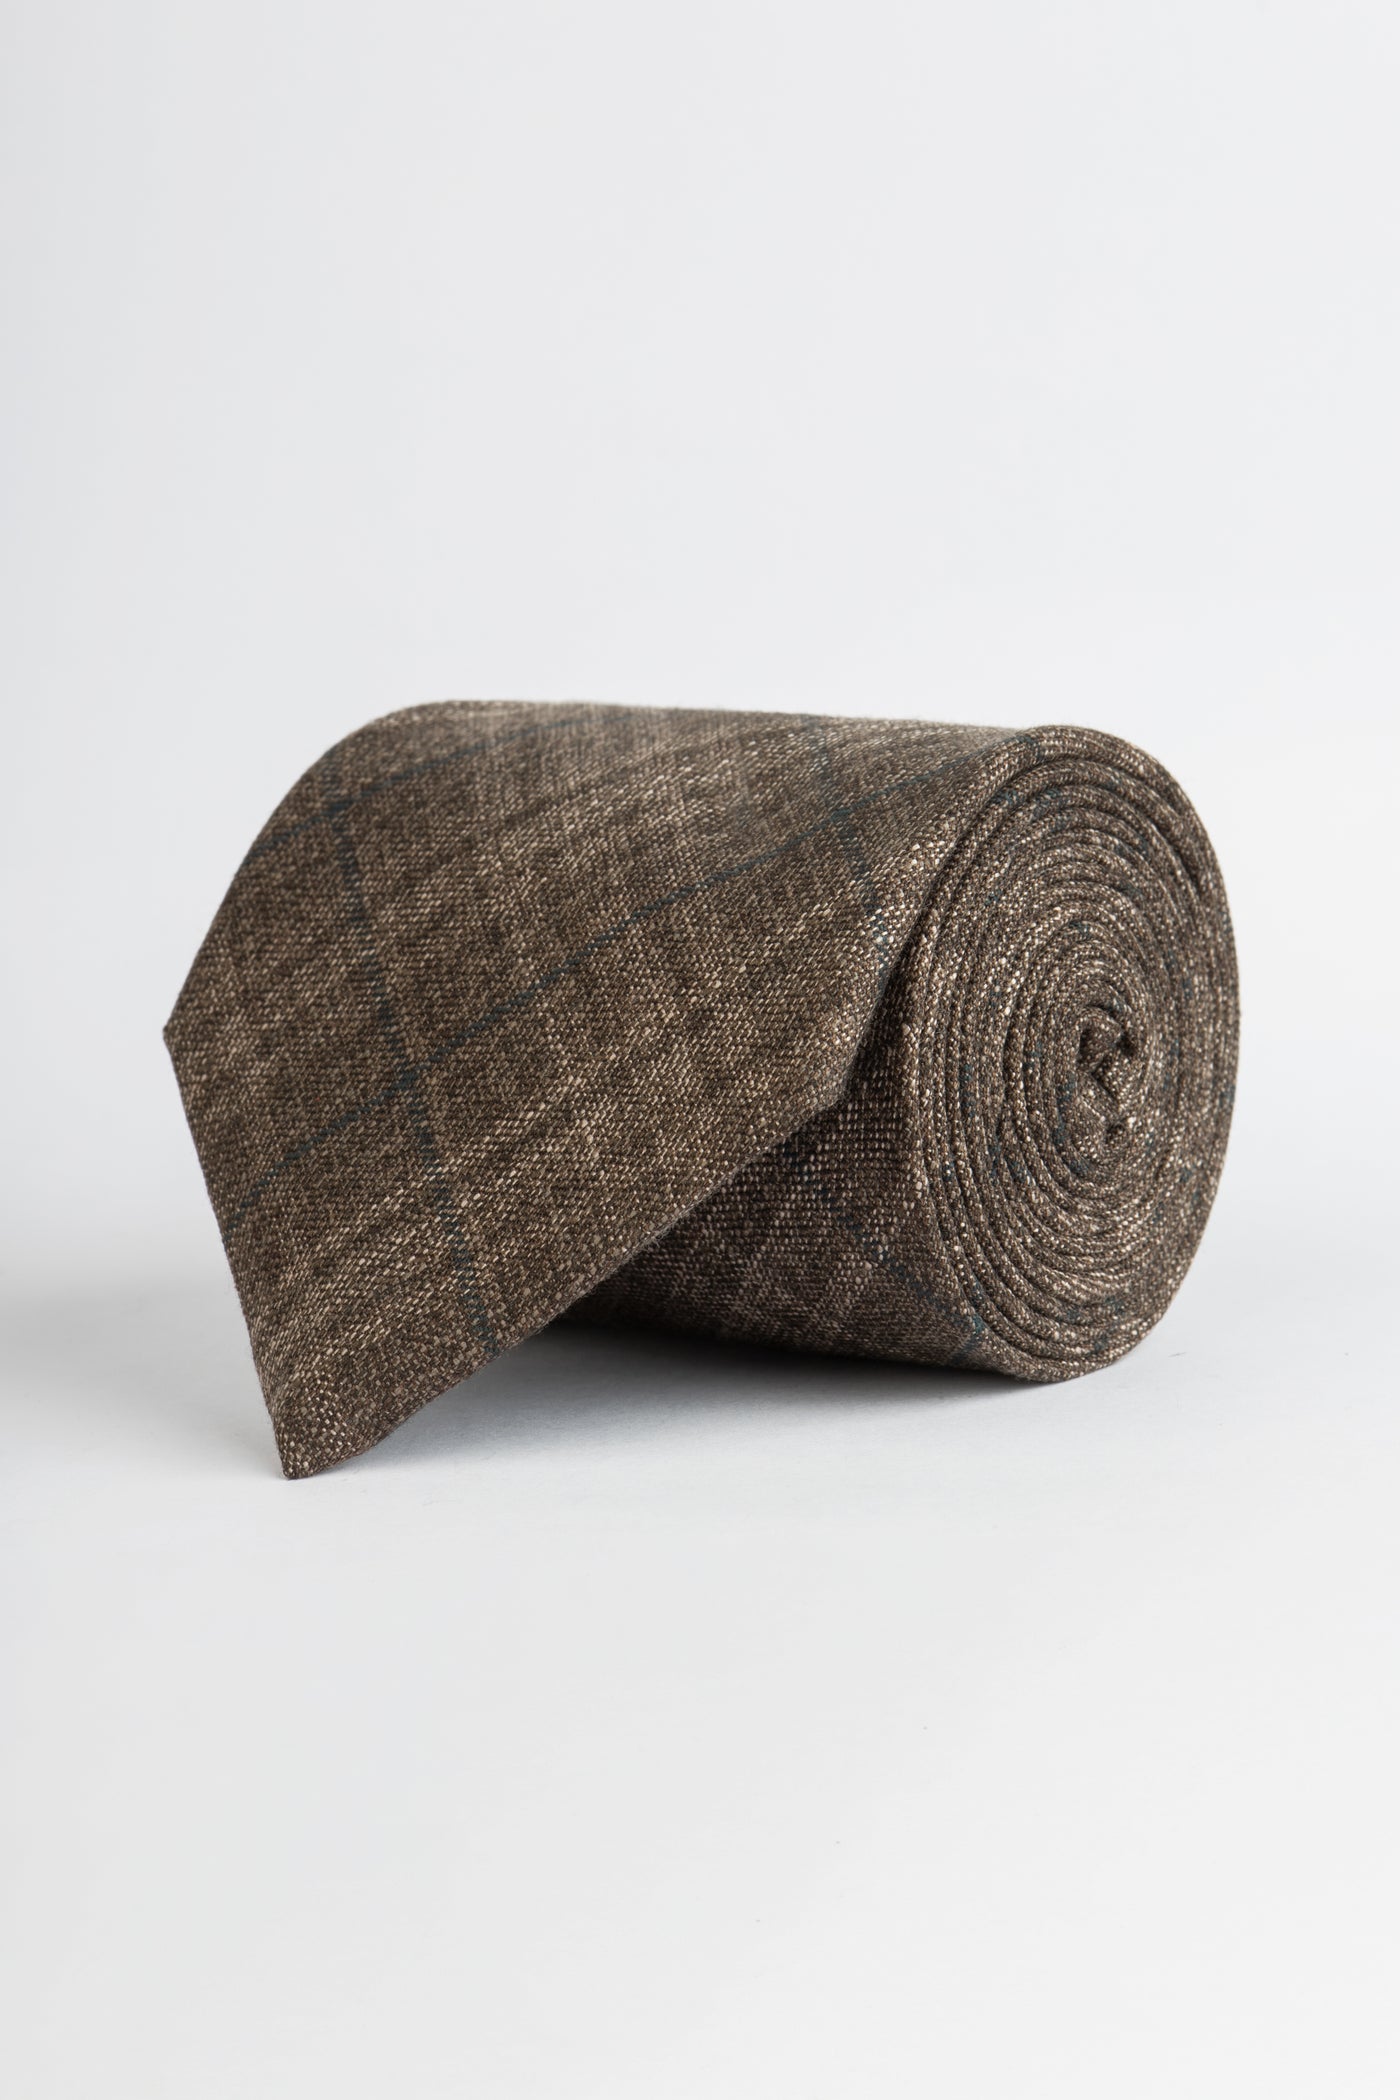 Knitted Brown & Beige Necktie With Handkerchief